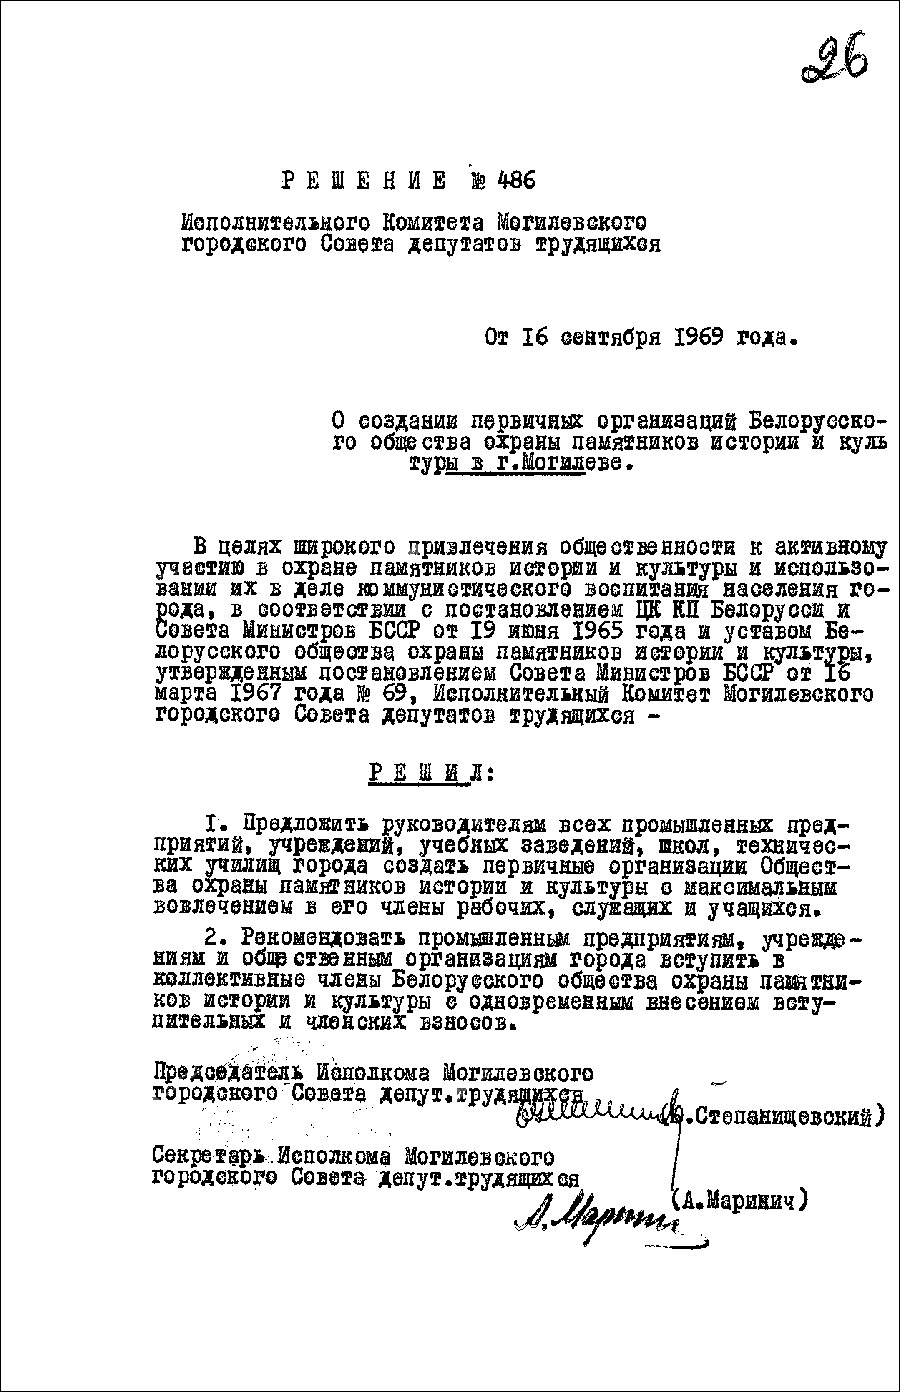 Beschluss Nr. 486 des Exekutivkomitees des Arbeiterdeputiertenrats der Stadt Mogilev «Über die Gründung von Hauptorganisationen der Belarussischen Gesellschaft zum Schutz historischer und kultureller Denkmäler in Mogilev»-с. 0